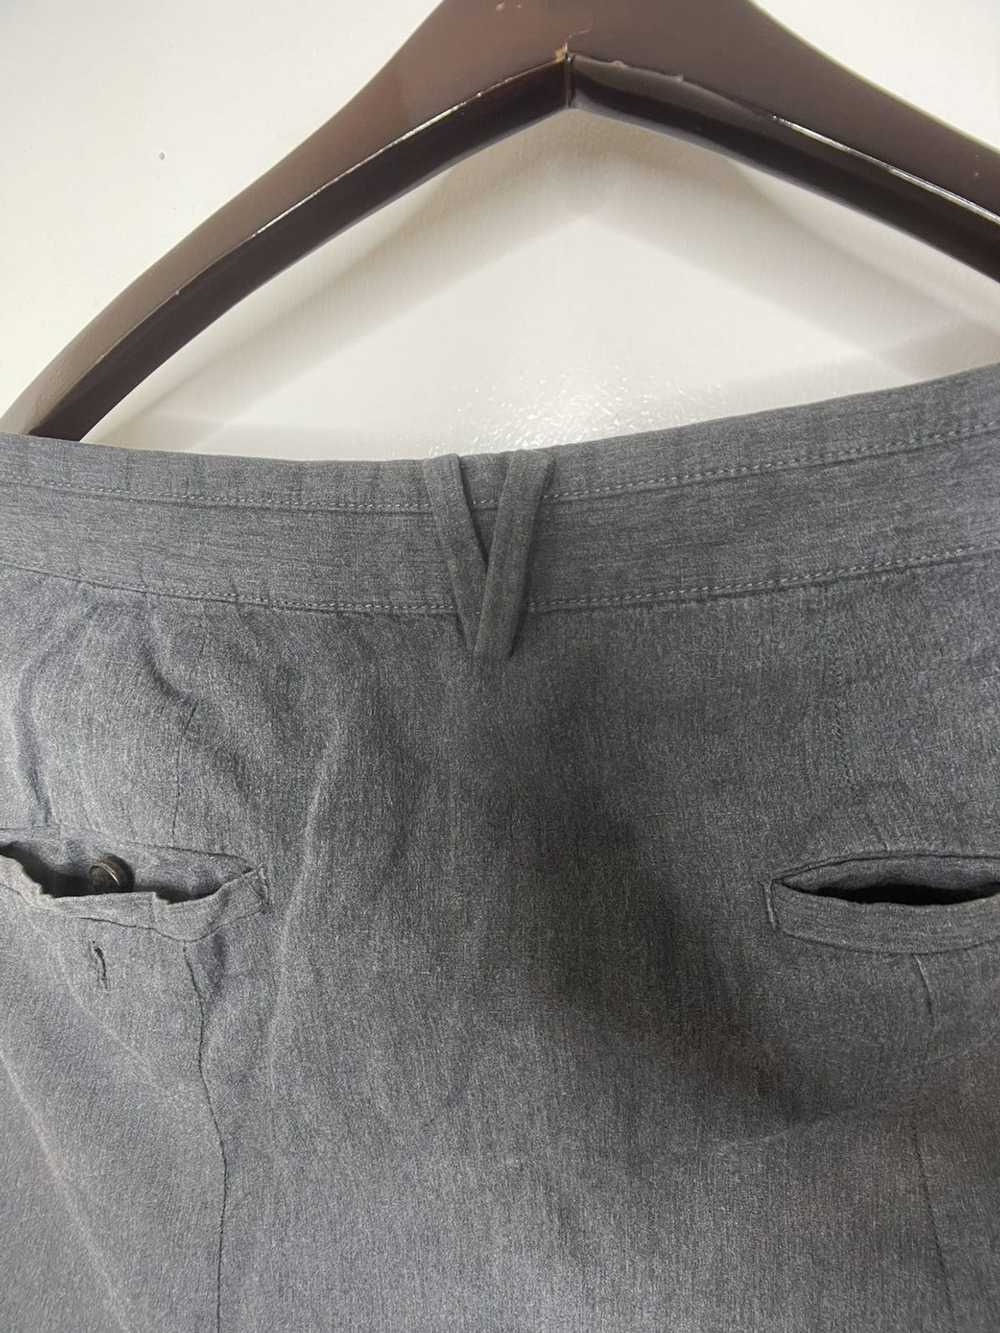 Allsaints Harem cut trousers (pants) - image 7